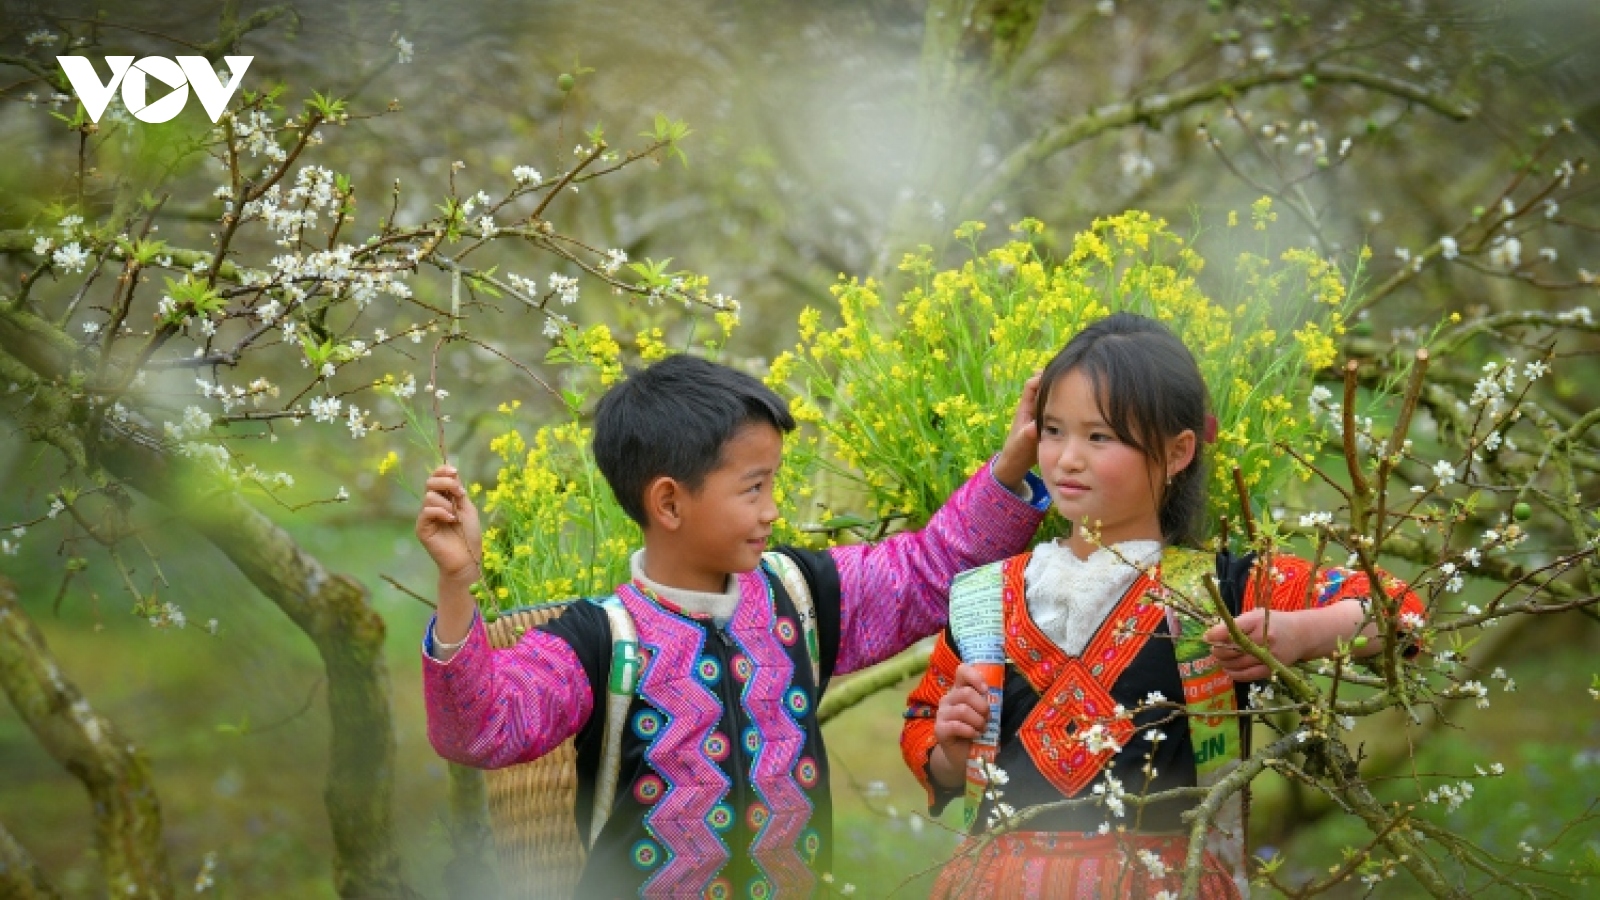 Photos capture beauty of children of Moc Chau Plateau 